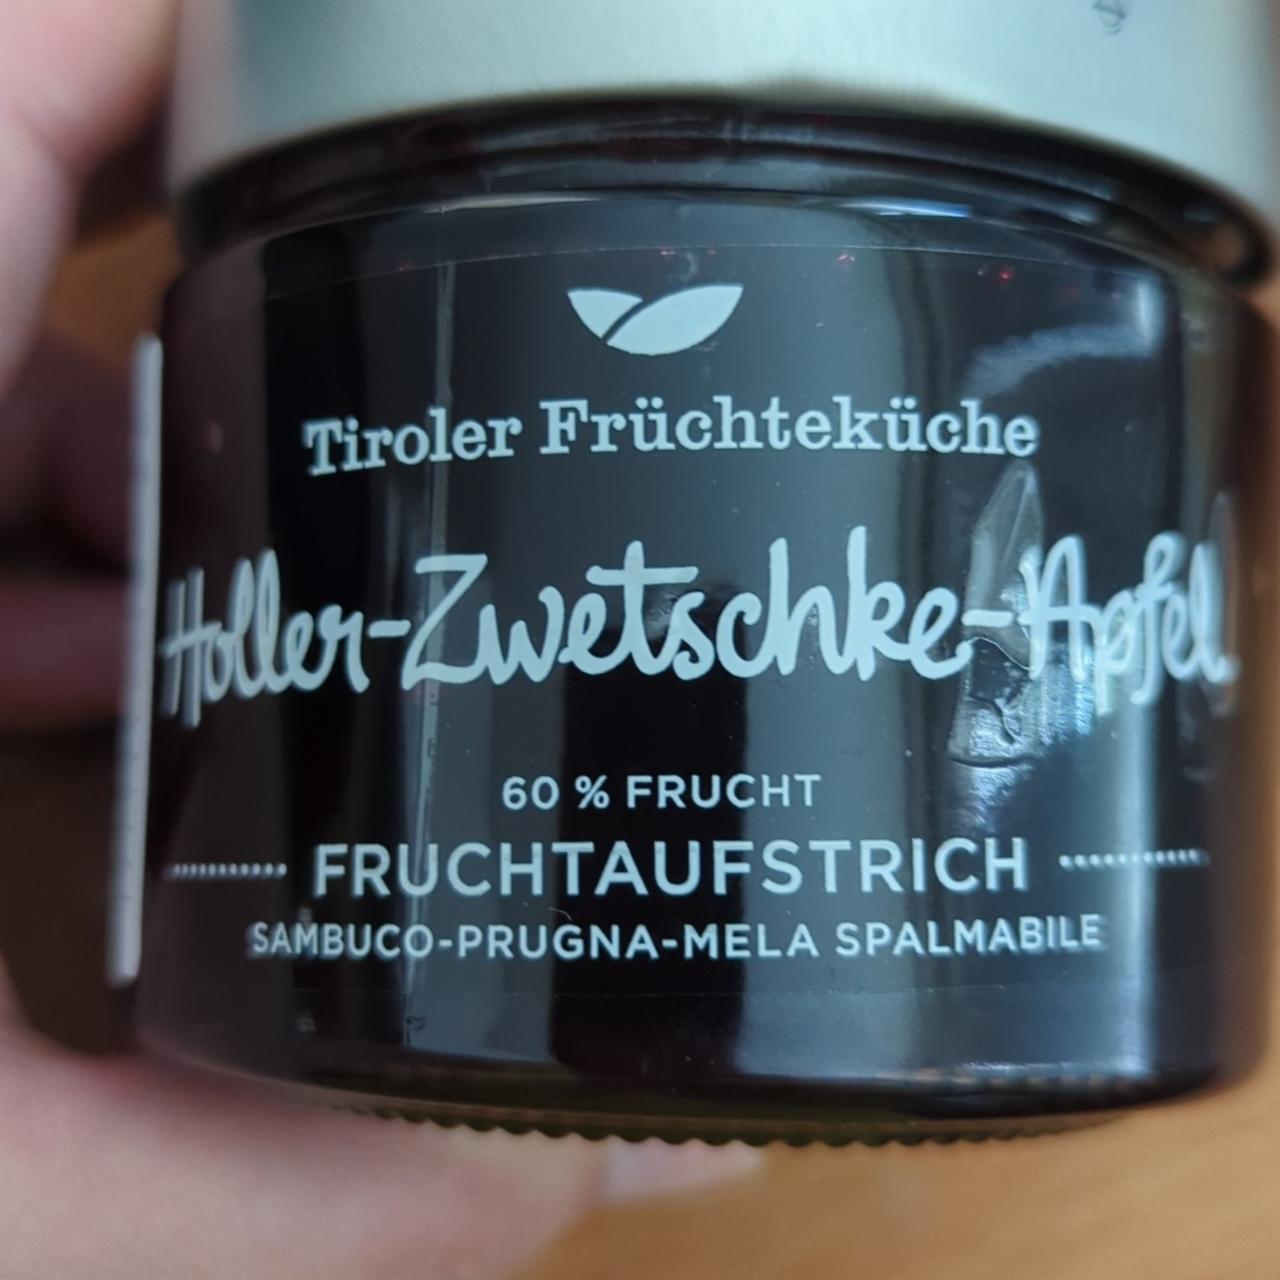 Fotografie - Holler-Zwetschke-Apfel Tiroler Früchteküche